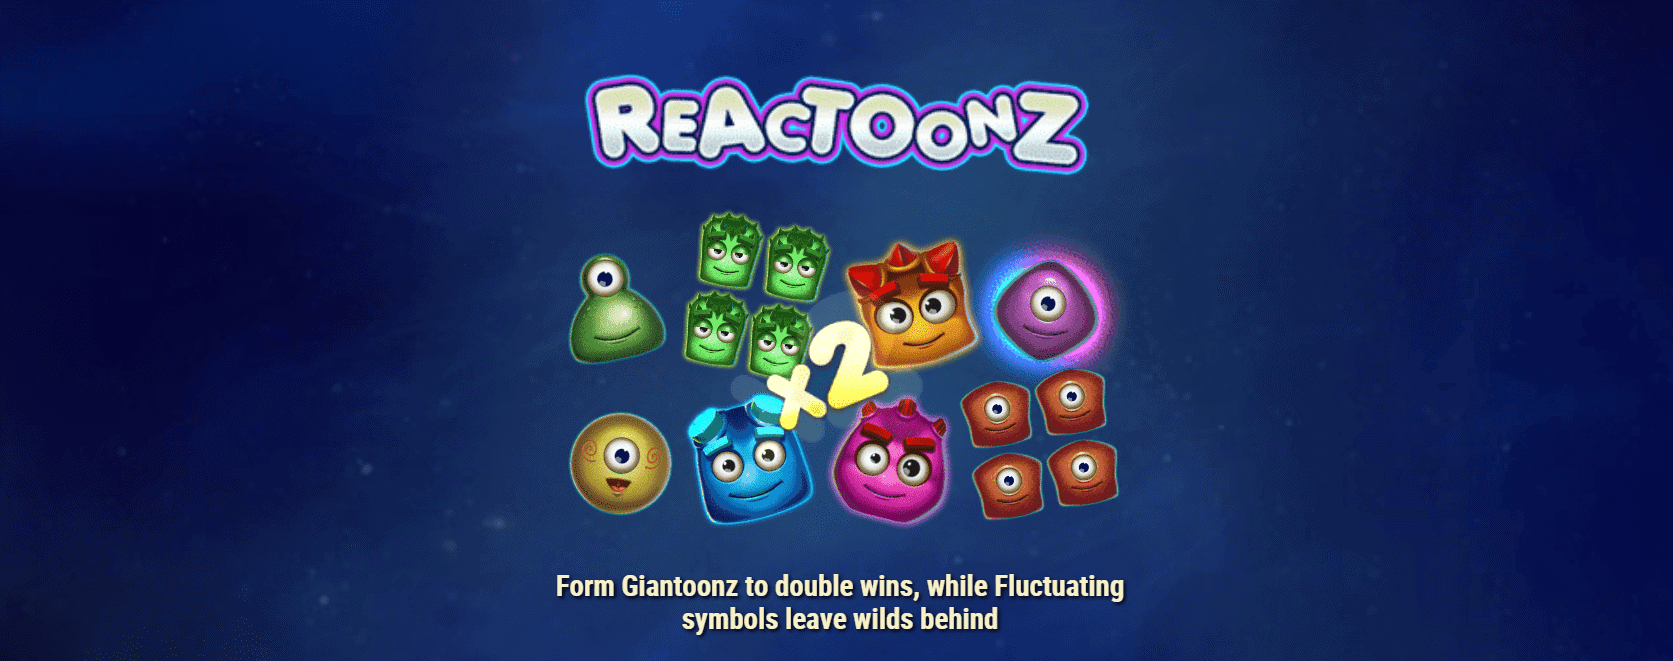 reactoonz-playn-go-3